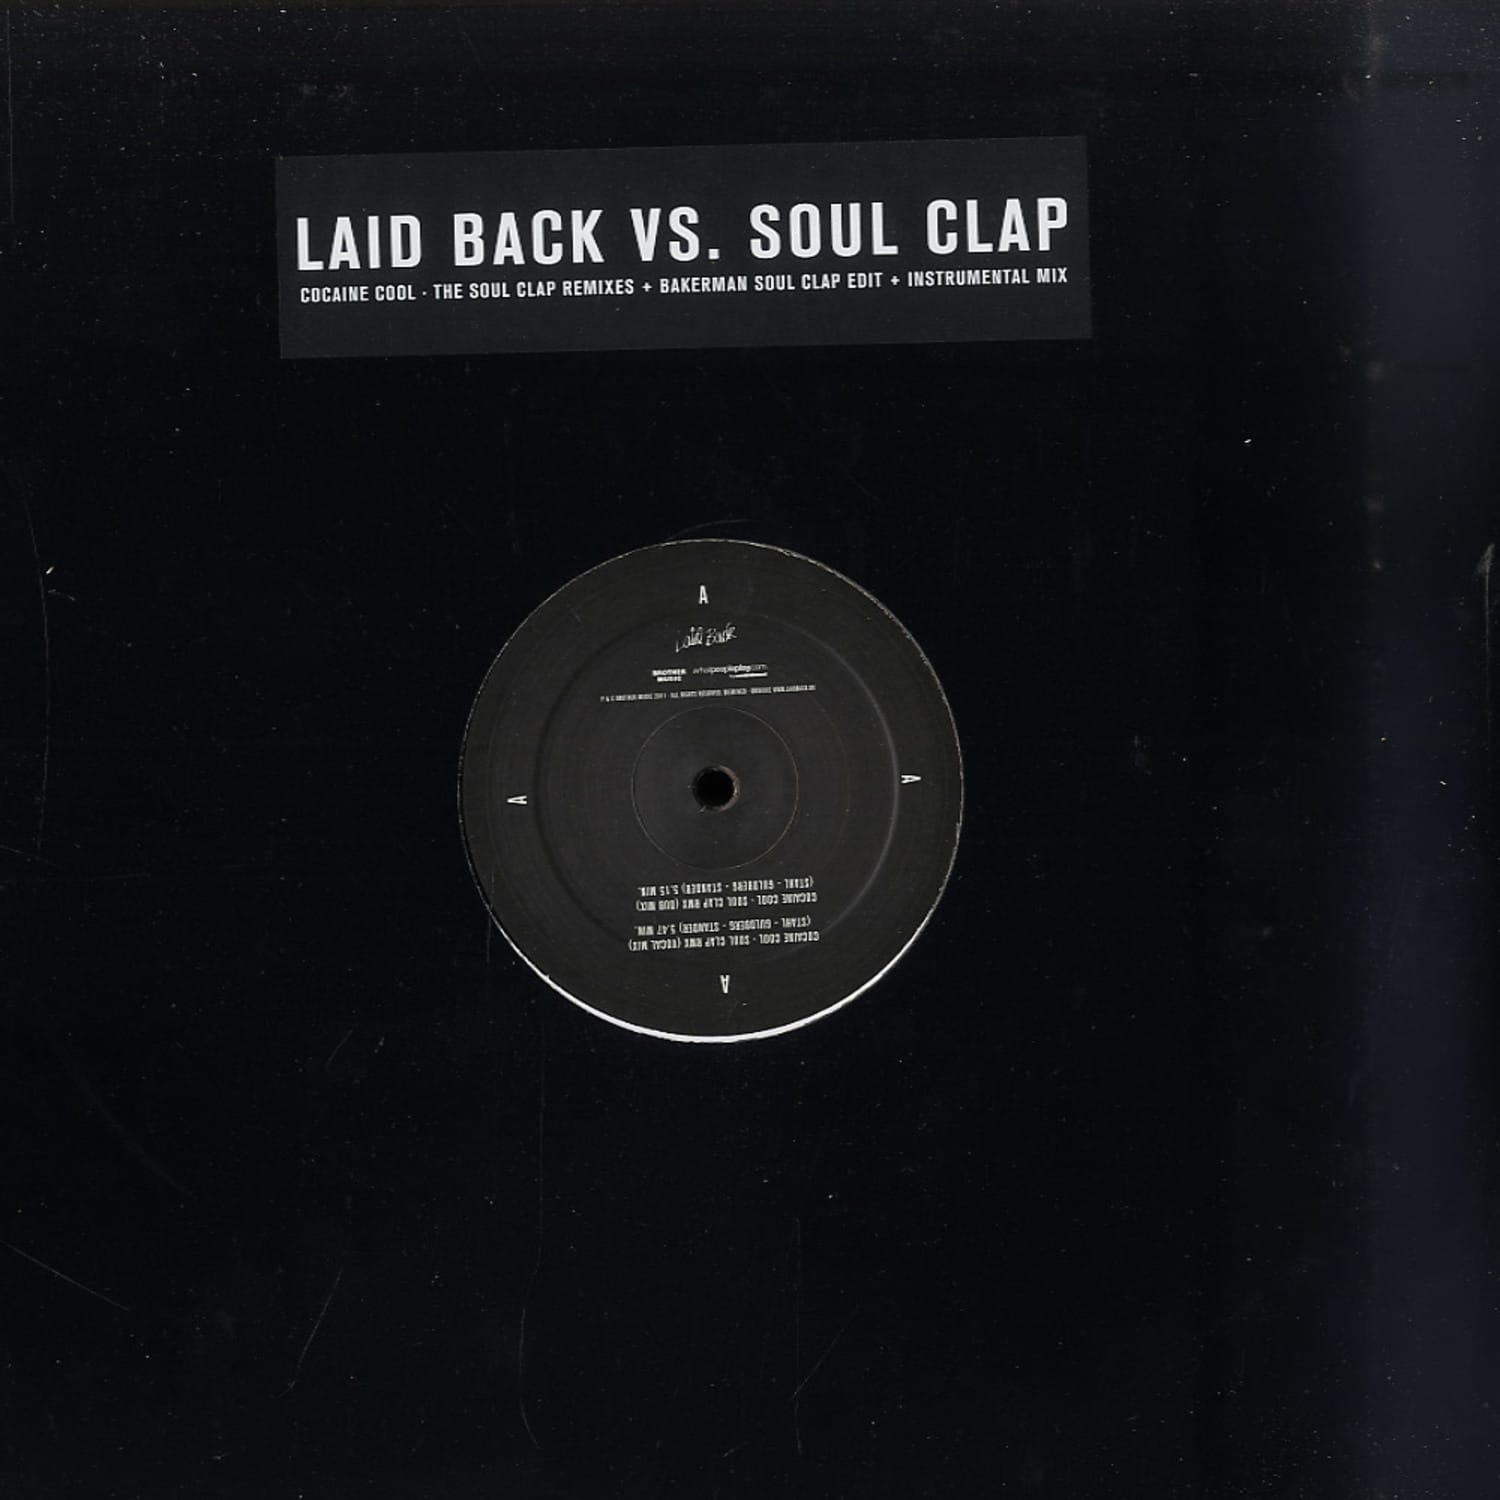 Laid Back vs. Soul Clap - COCAINE COOL 